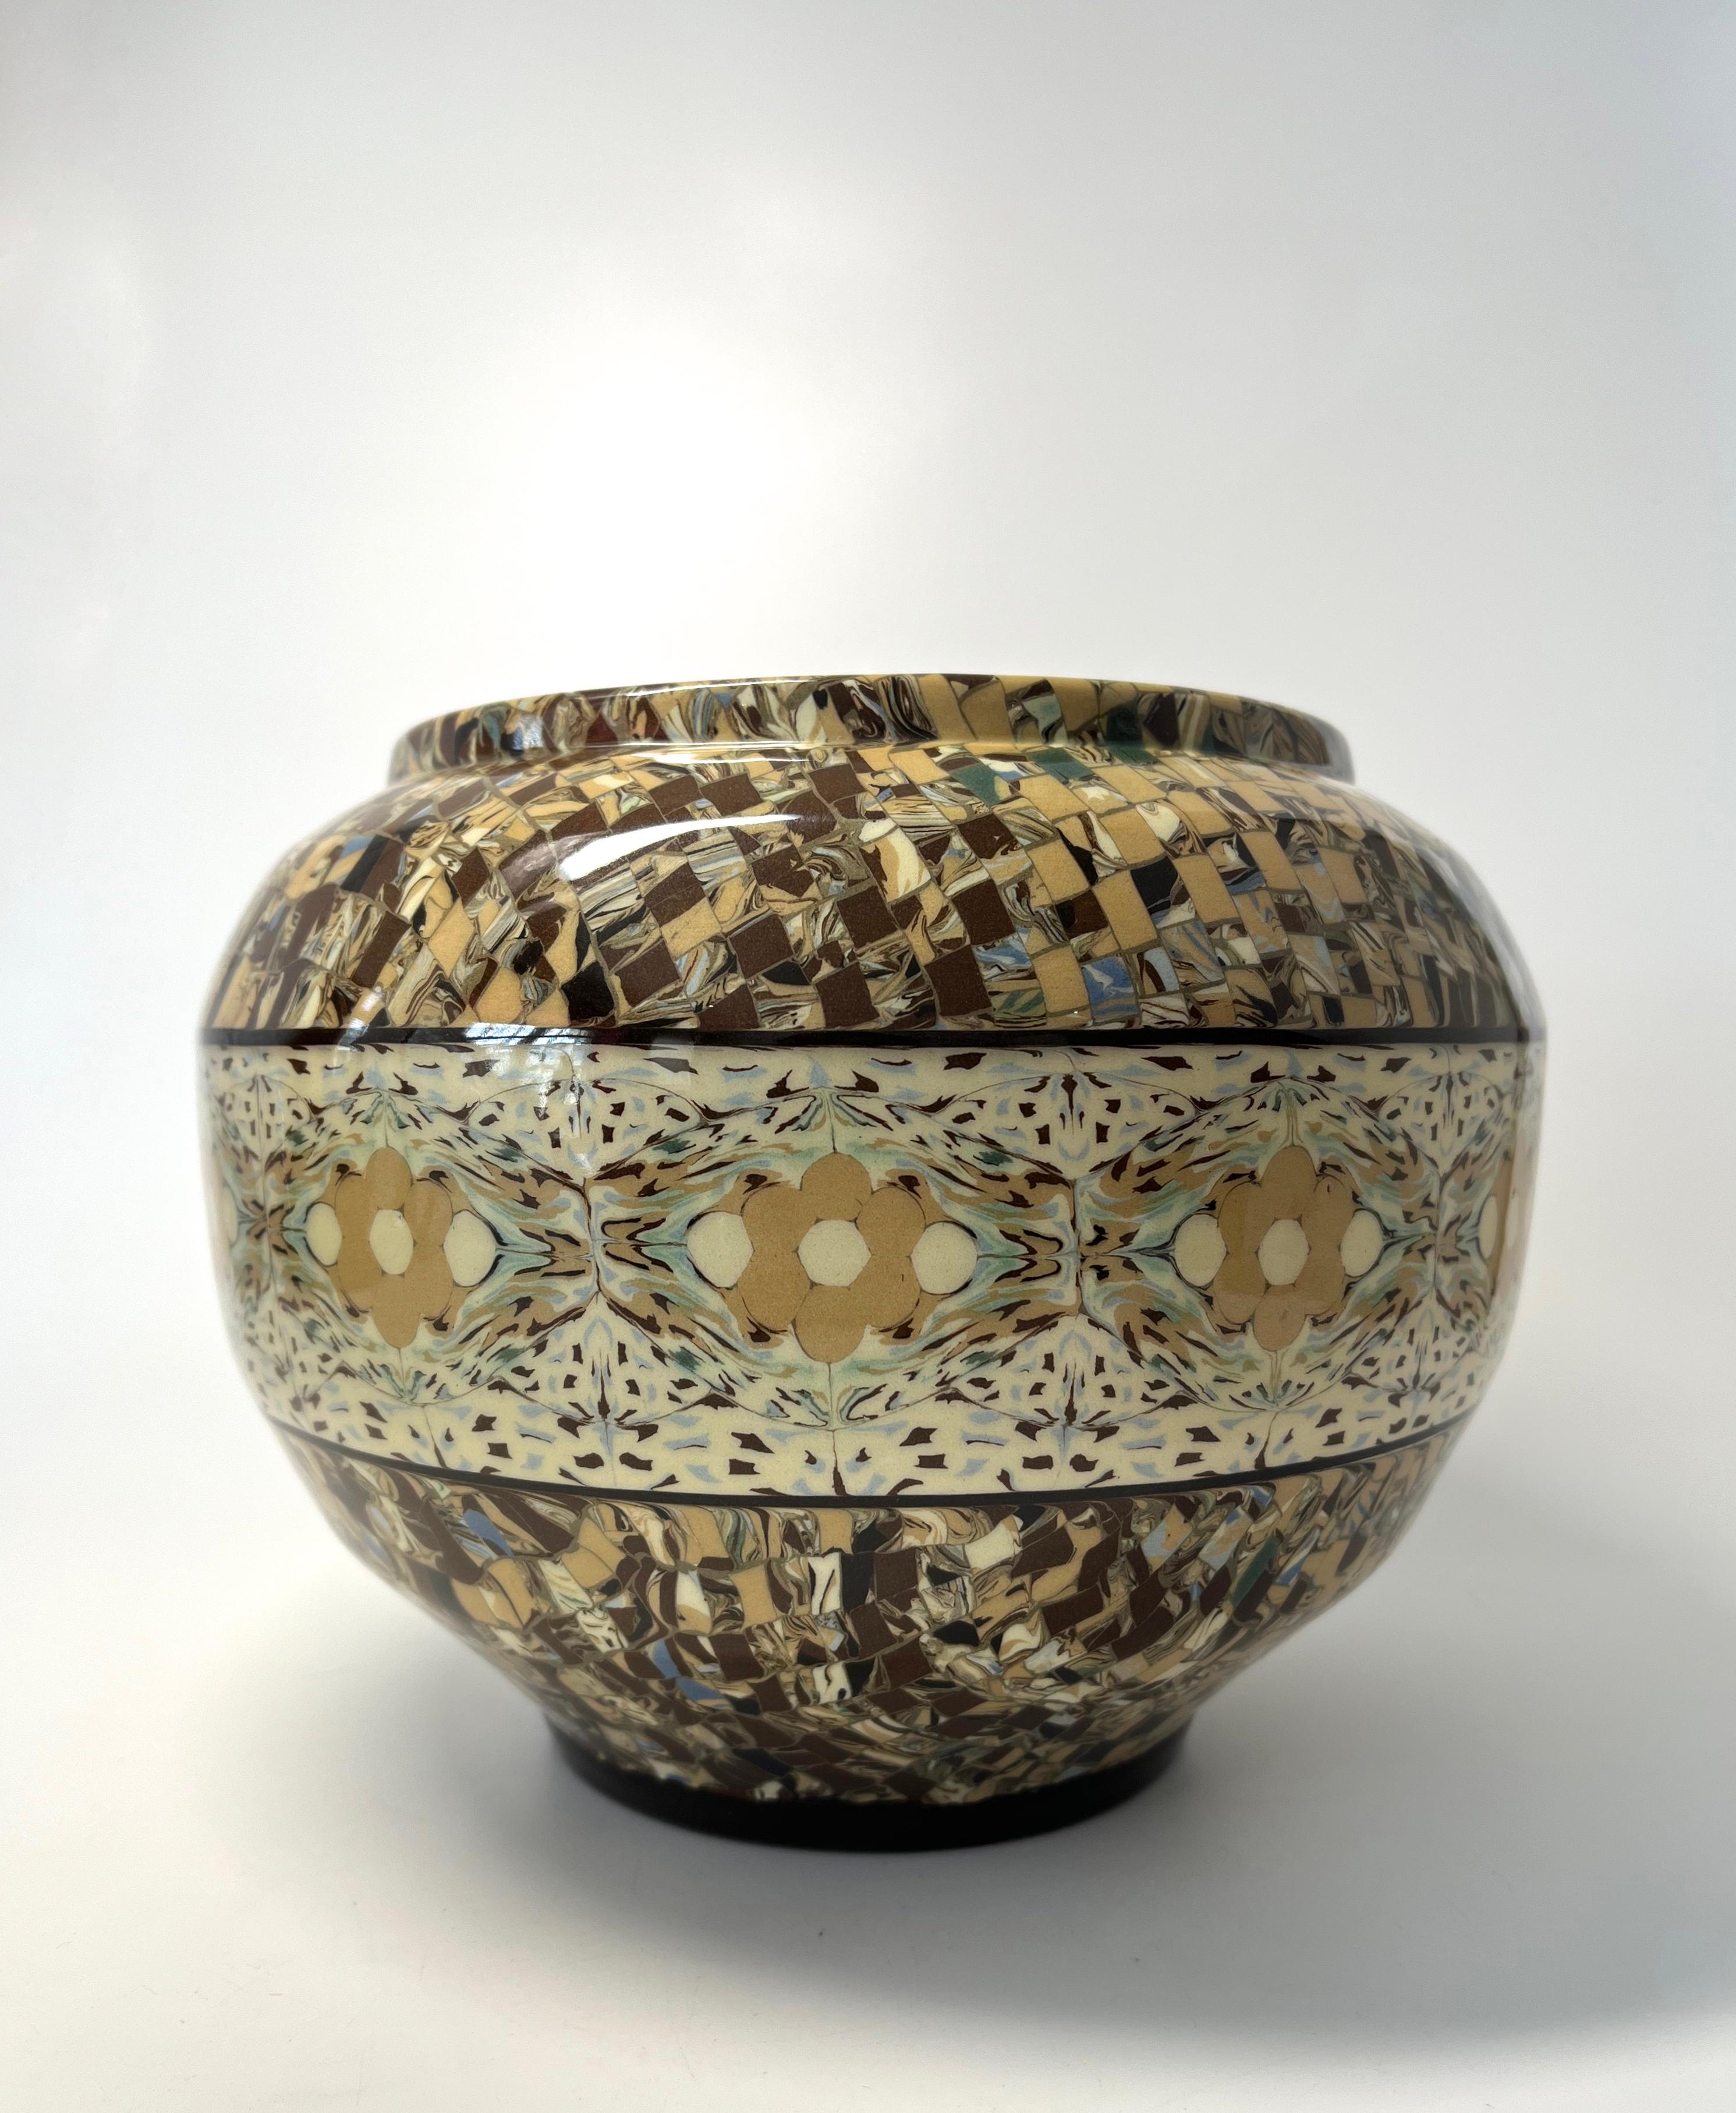 Fabuleux vase surdimensionné de Jean Gerbino pour Vallauris, France.
Créée par le maître céramiste, cette pièce de connaisseur est en parfait état.
Les couleurs sont un mélange de sable, de crème, de moka et de verts les plus pâles.
Circa